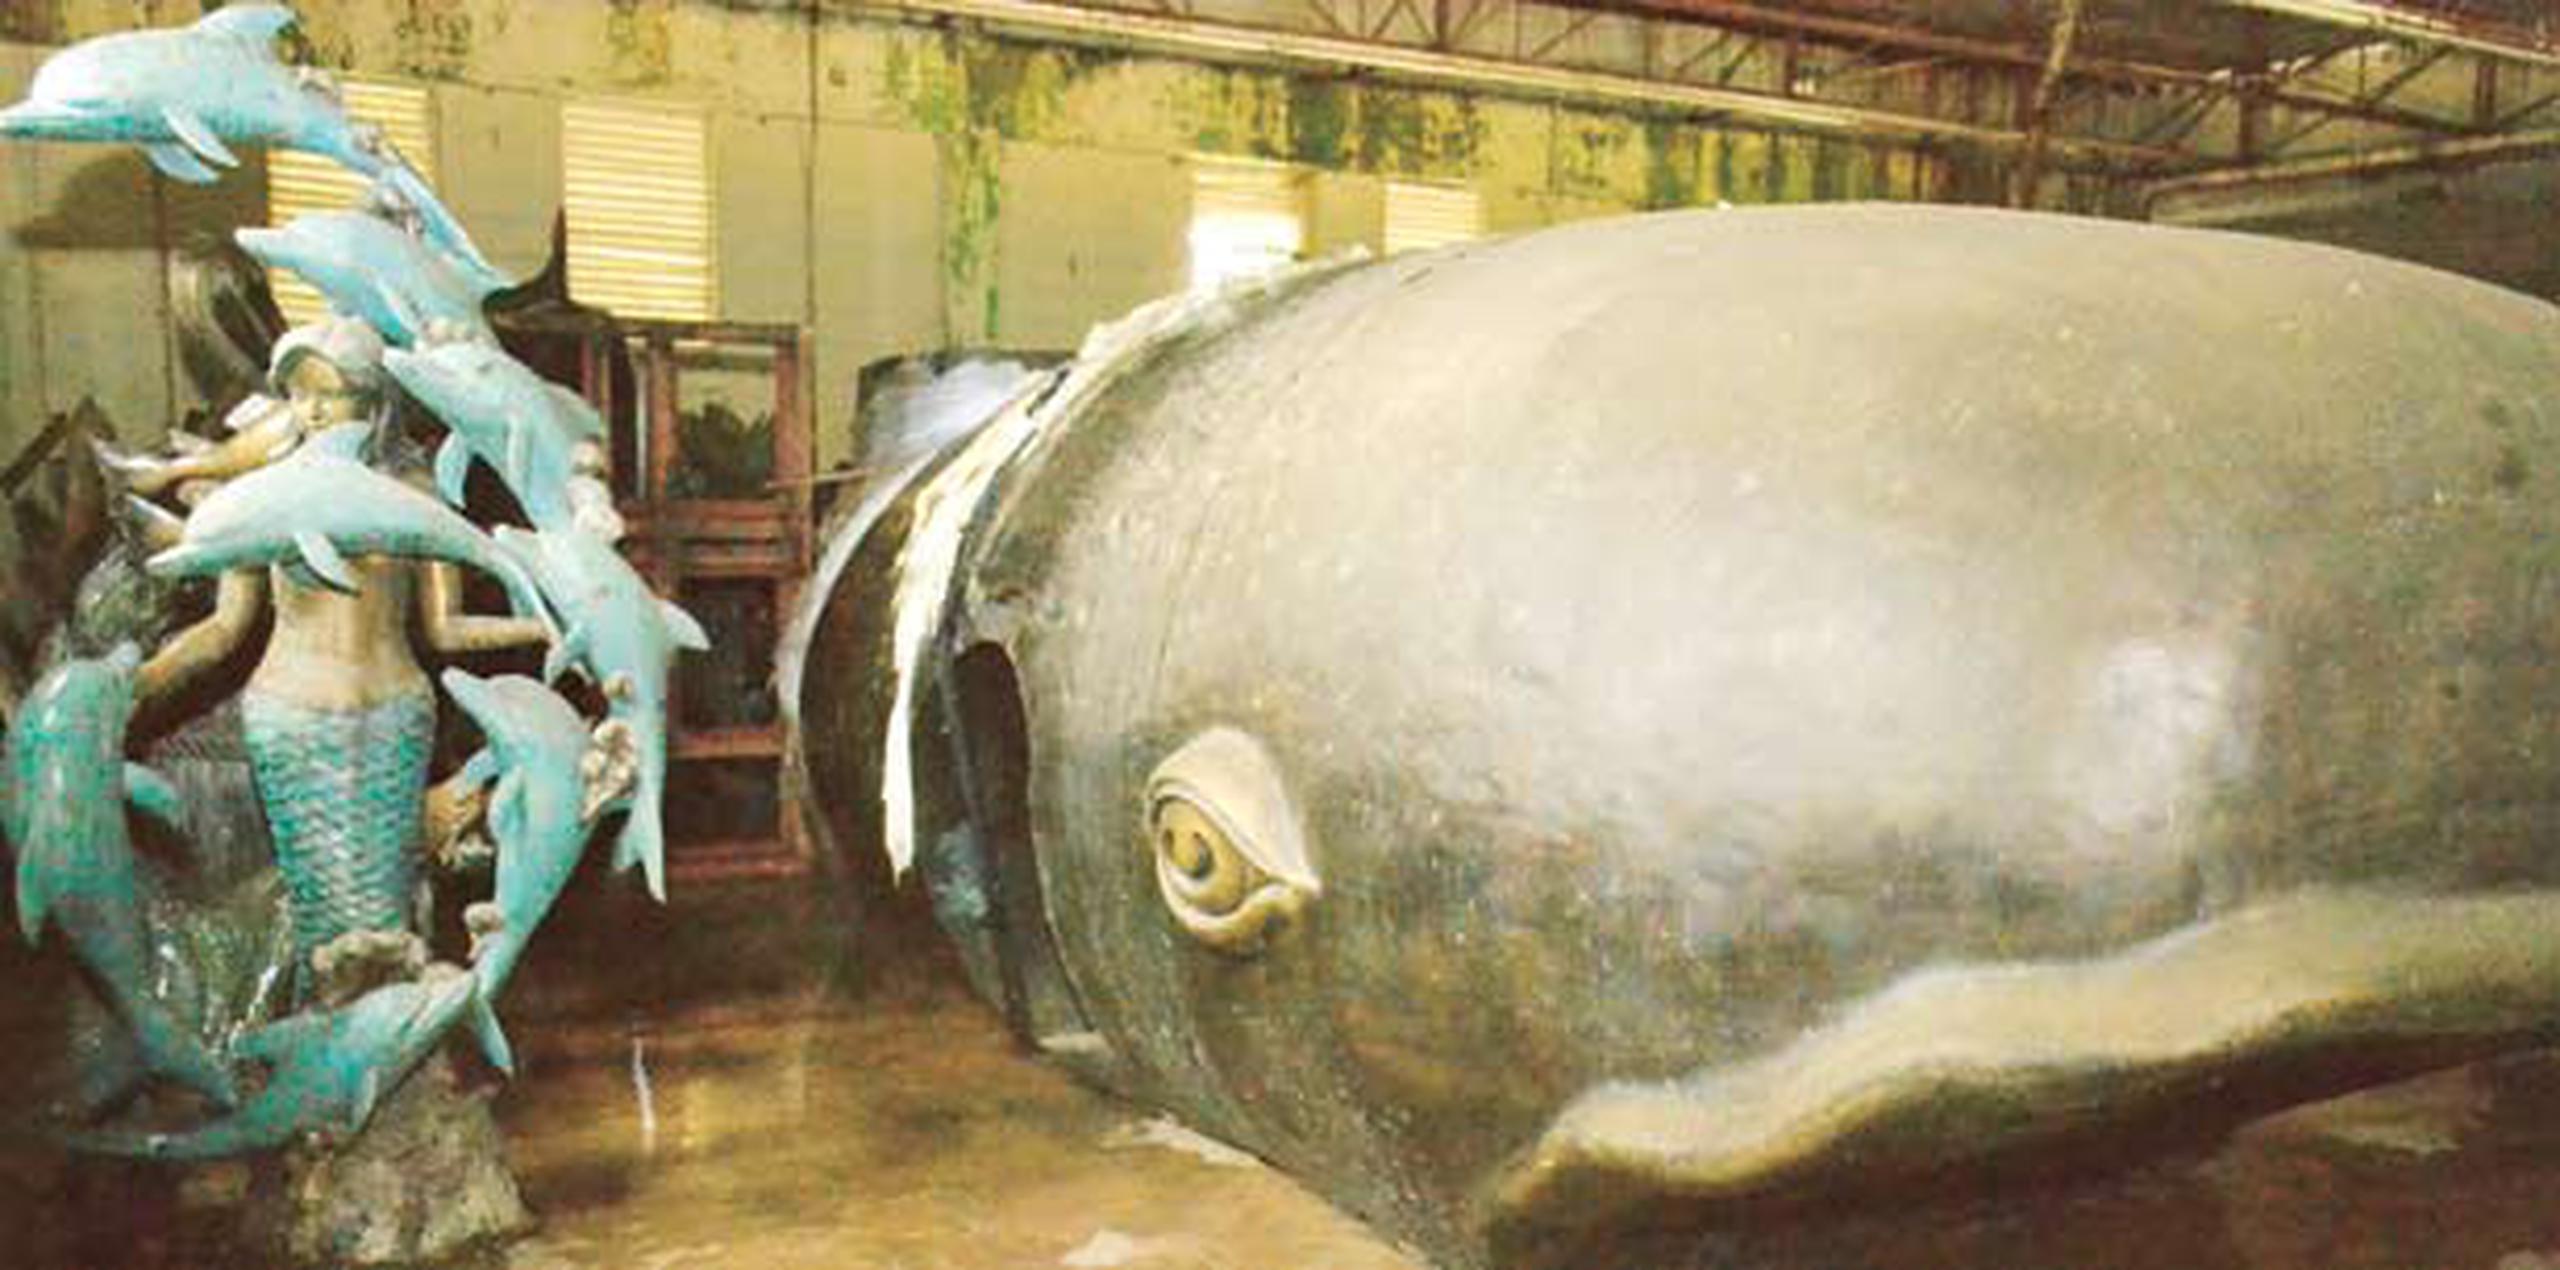 En un garaje en la tierra del Melao Melao, yace esta ballena que en 2011, le costó a las vacías arcas municipales nada más y nada menos que más de medio millón de dólares. (gerardo.otero@gfrmedia.com)